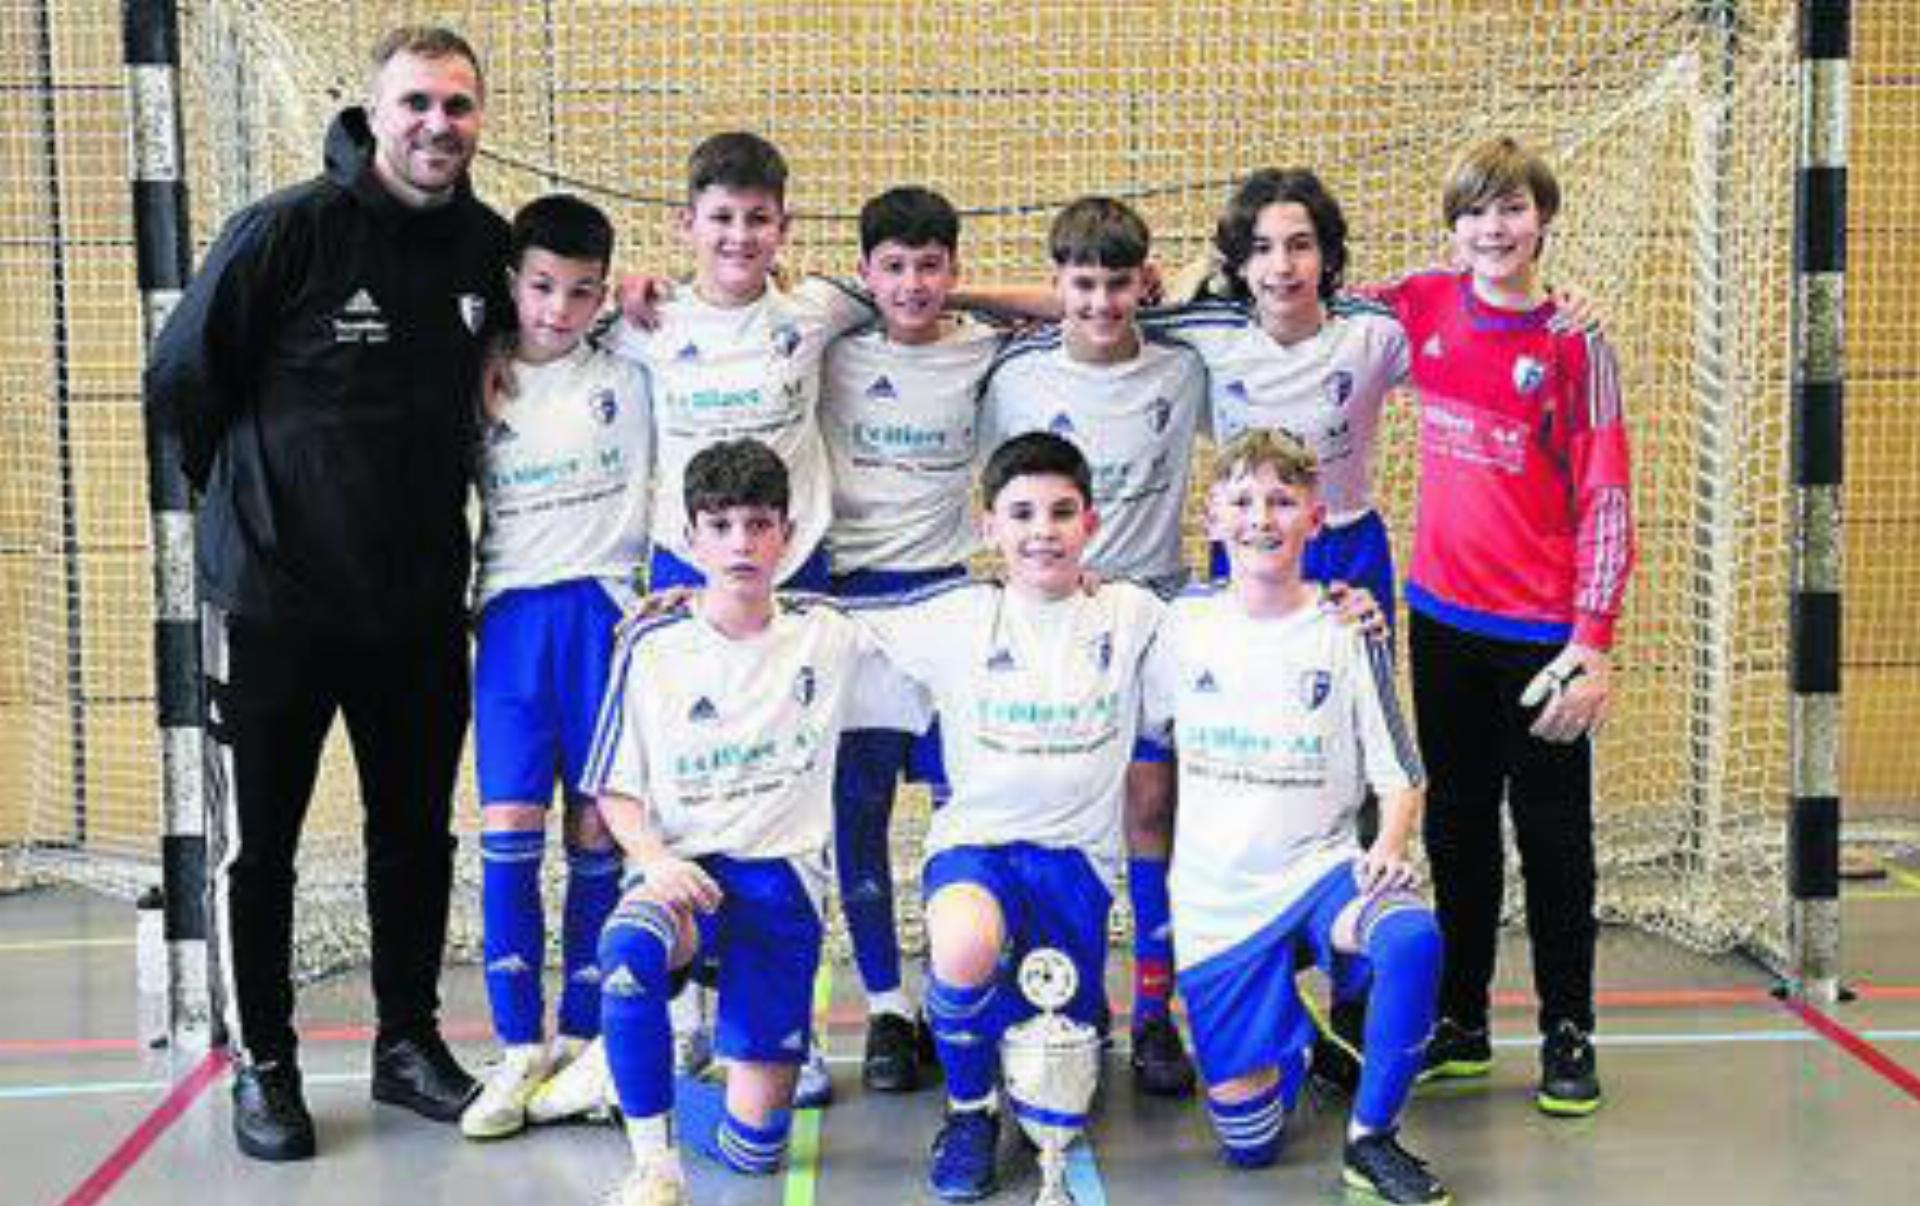 Der Nachwuchs des FC Wohlen feiert den Titel in der AFV Futsal Junior League. Bild: Alexander Wagner